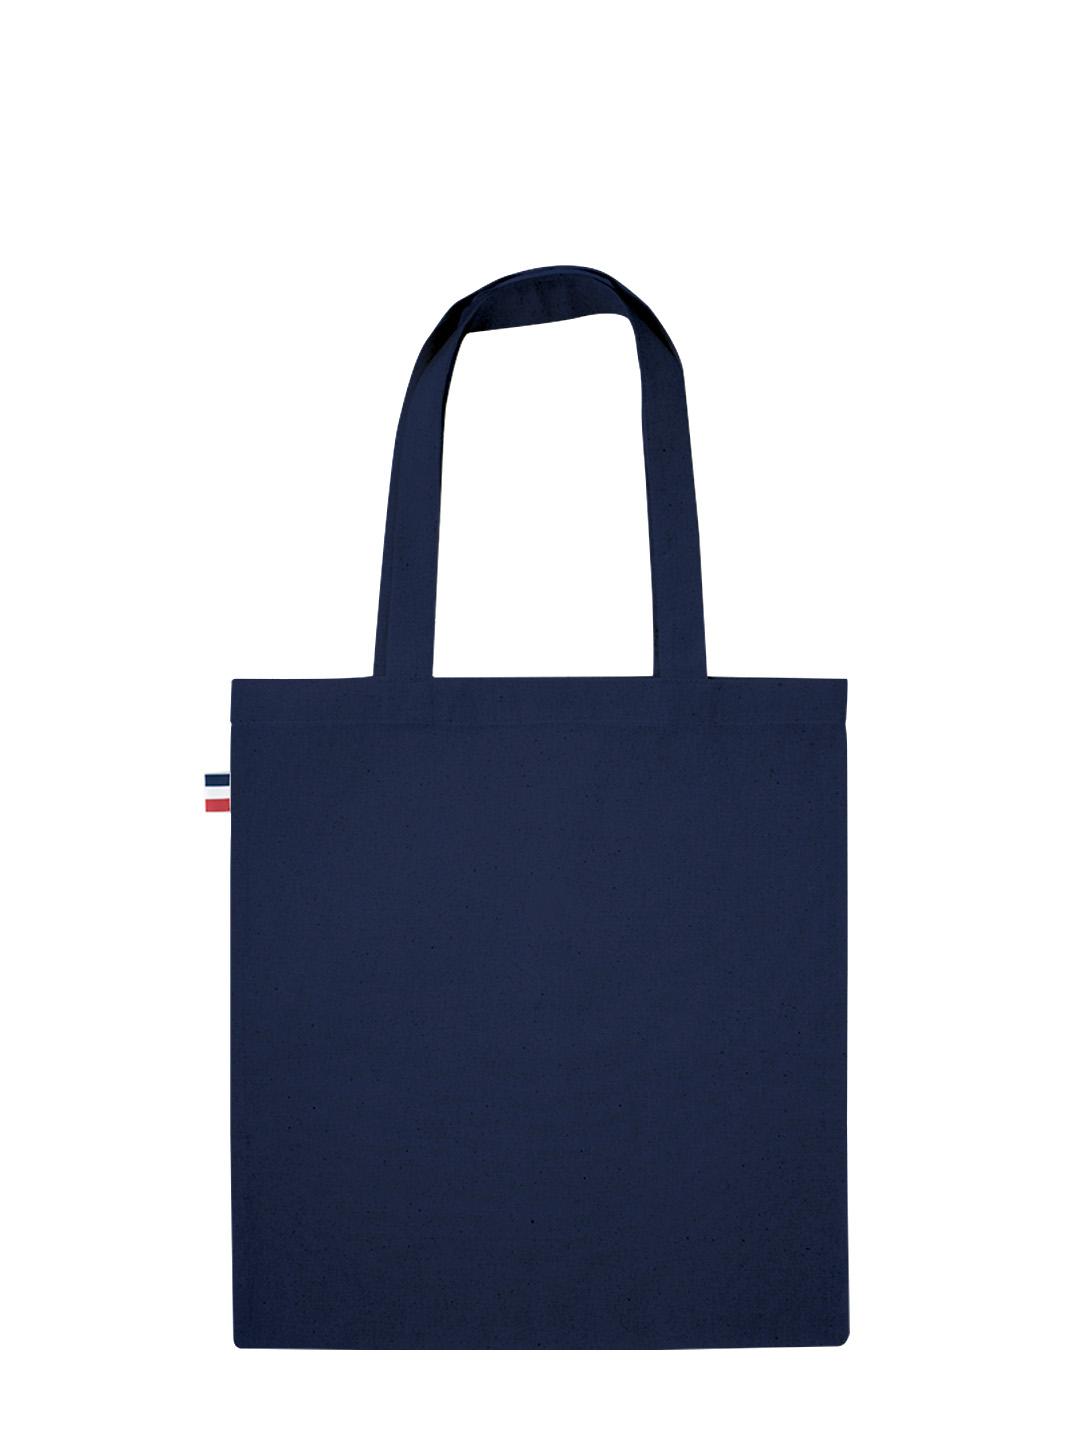 Tote bag publicitaire Made in France en coton bleu marine certifié - 150 gr/m²